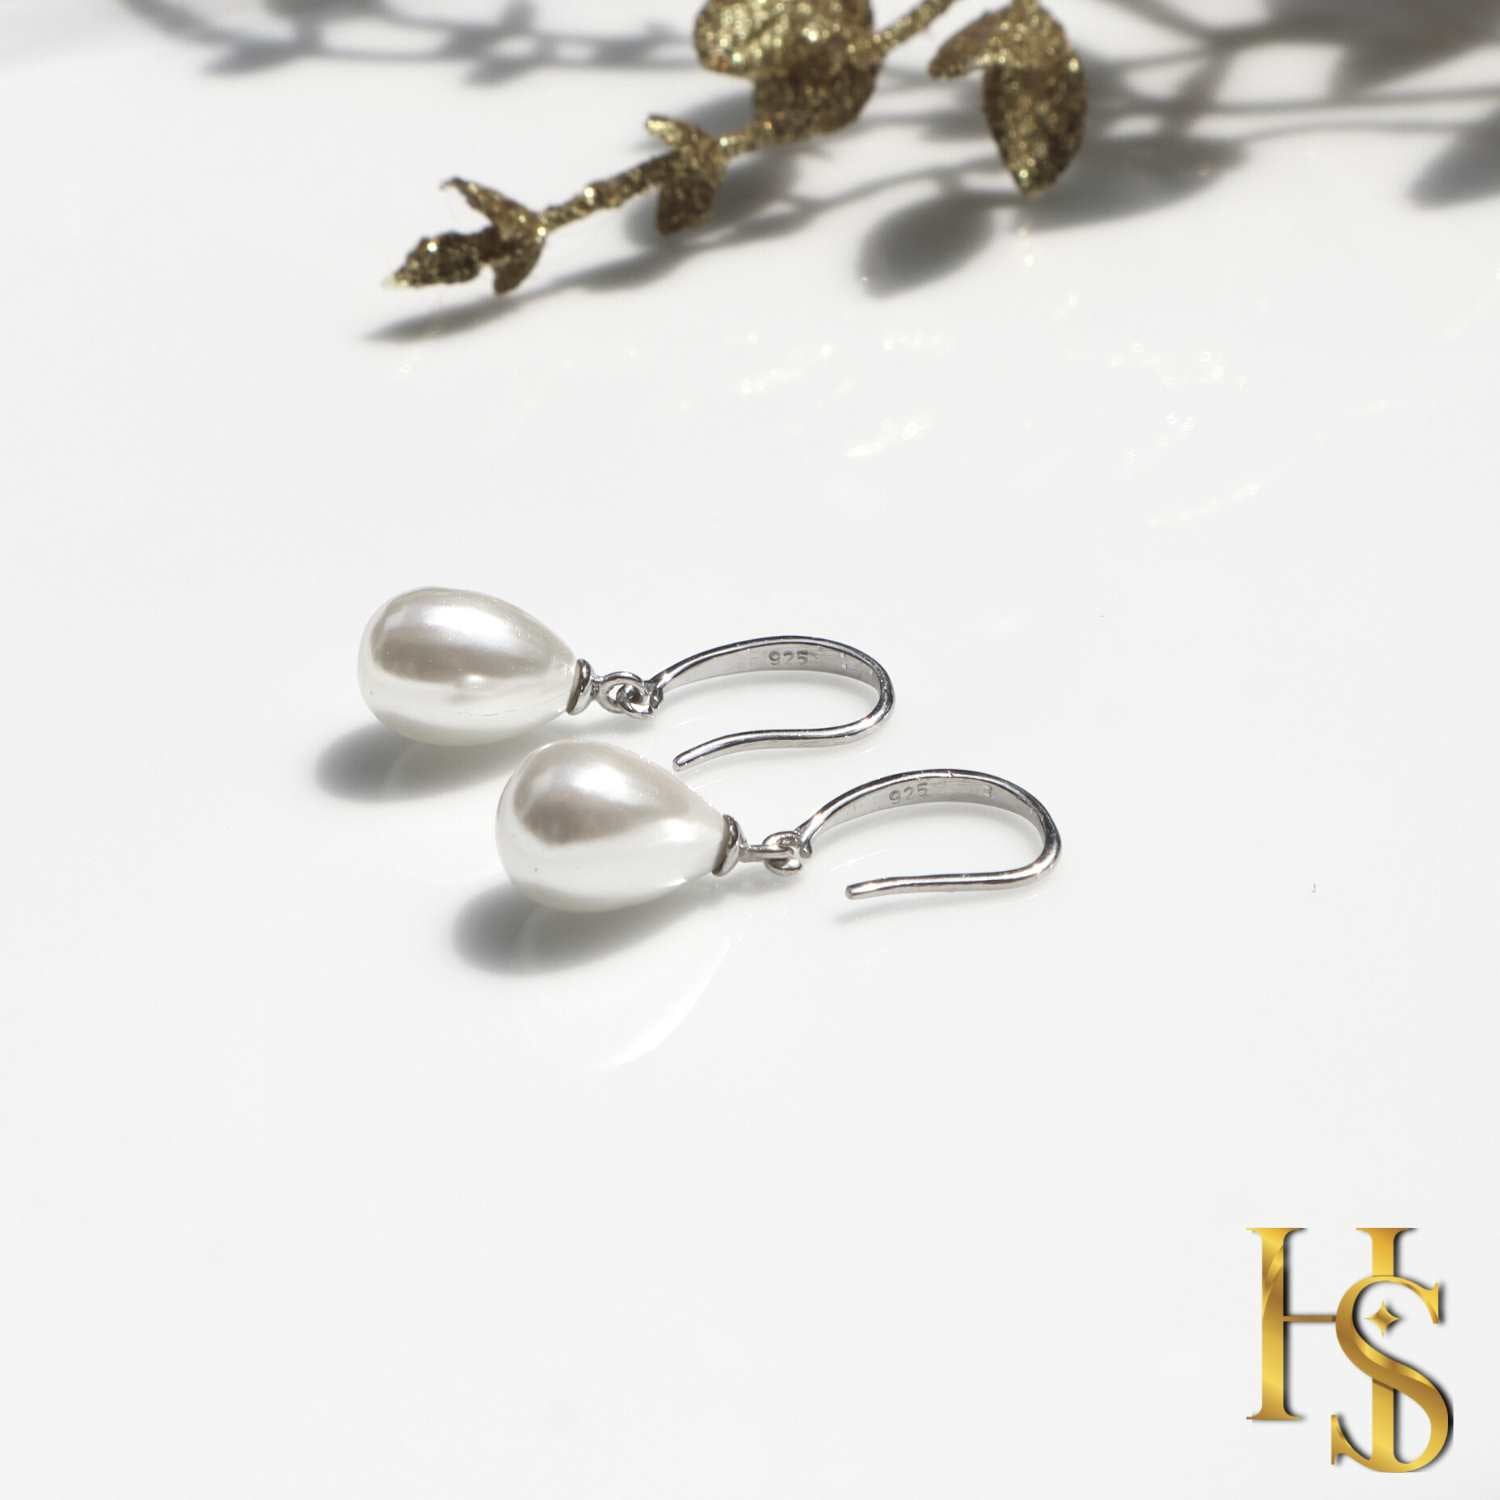 Pearl Drop Earrings in 925 silver - Pear Shaped/ Tear Drop Pearls